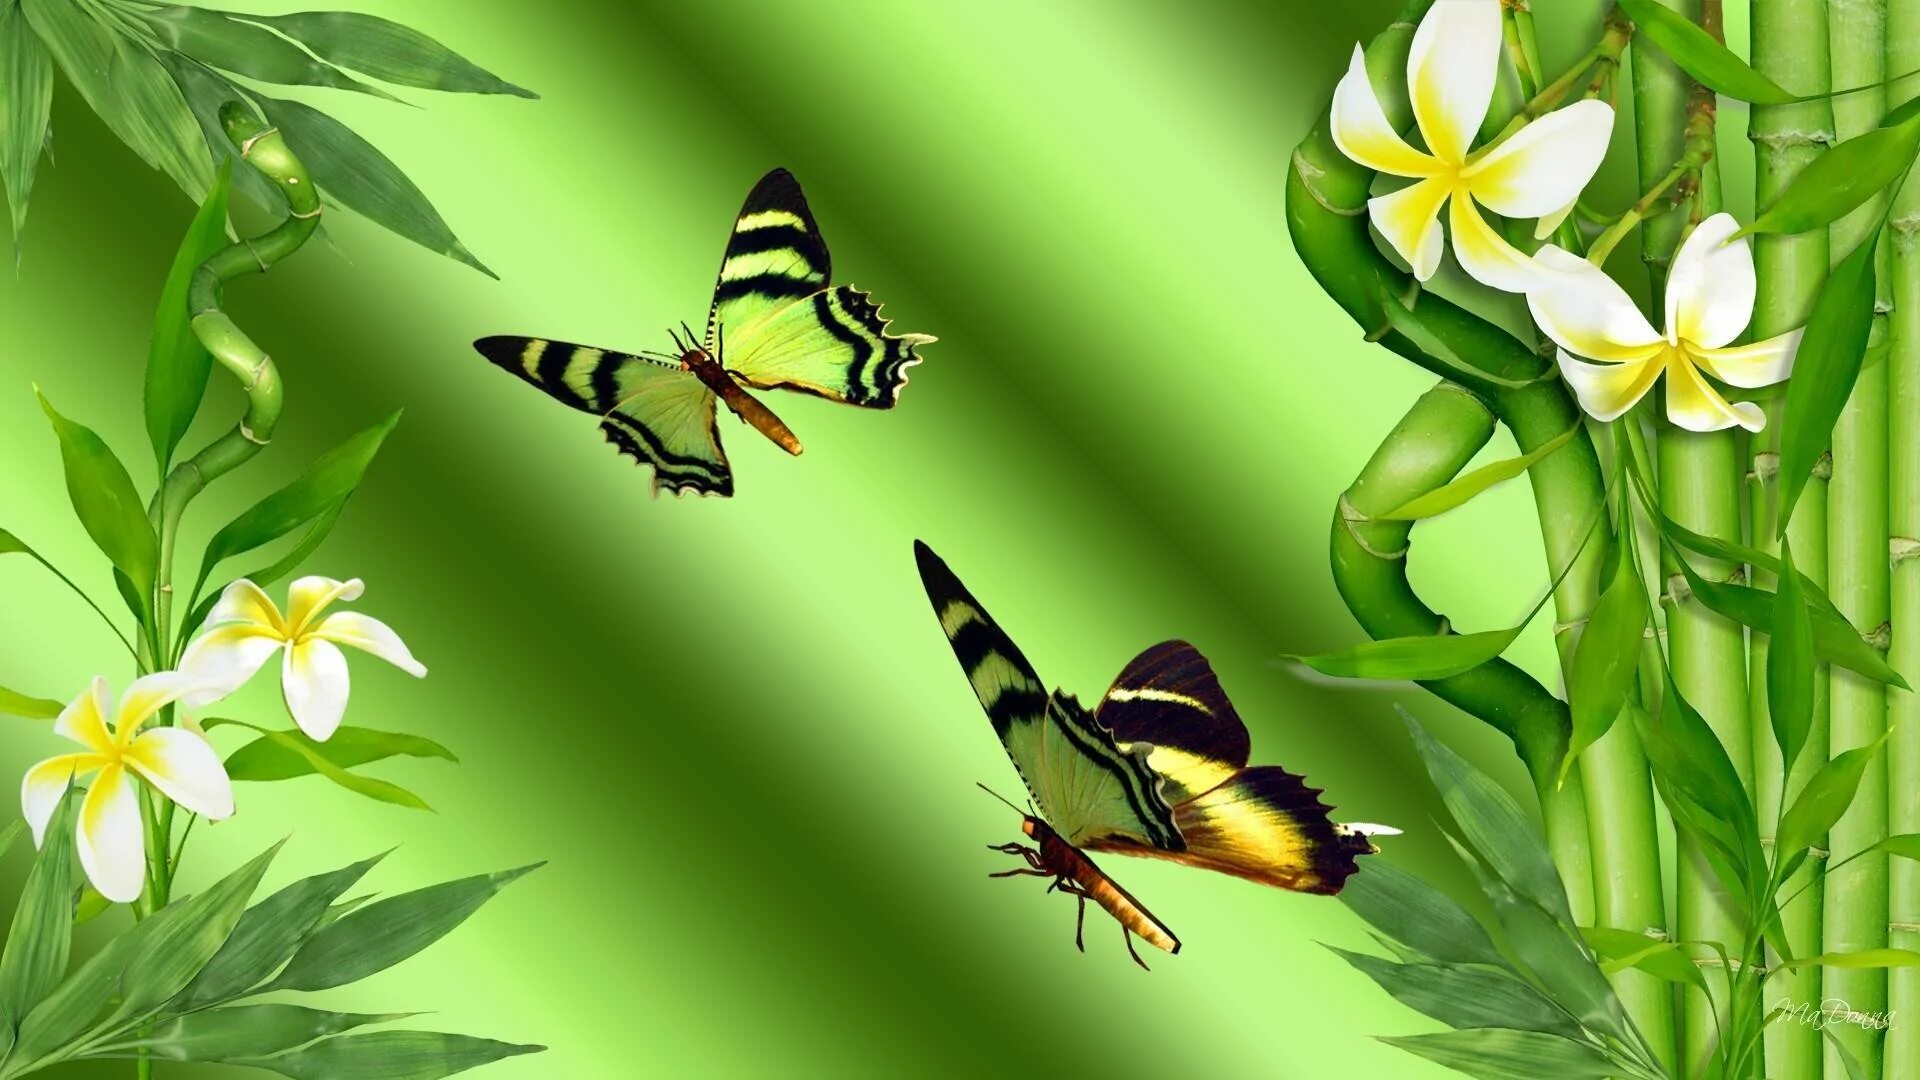 Обои на рабочий стол бабочки. Бабочки в природе. Фотообои бабочки. Красивый фон с бабочками.